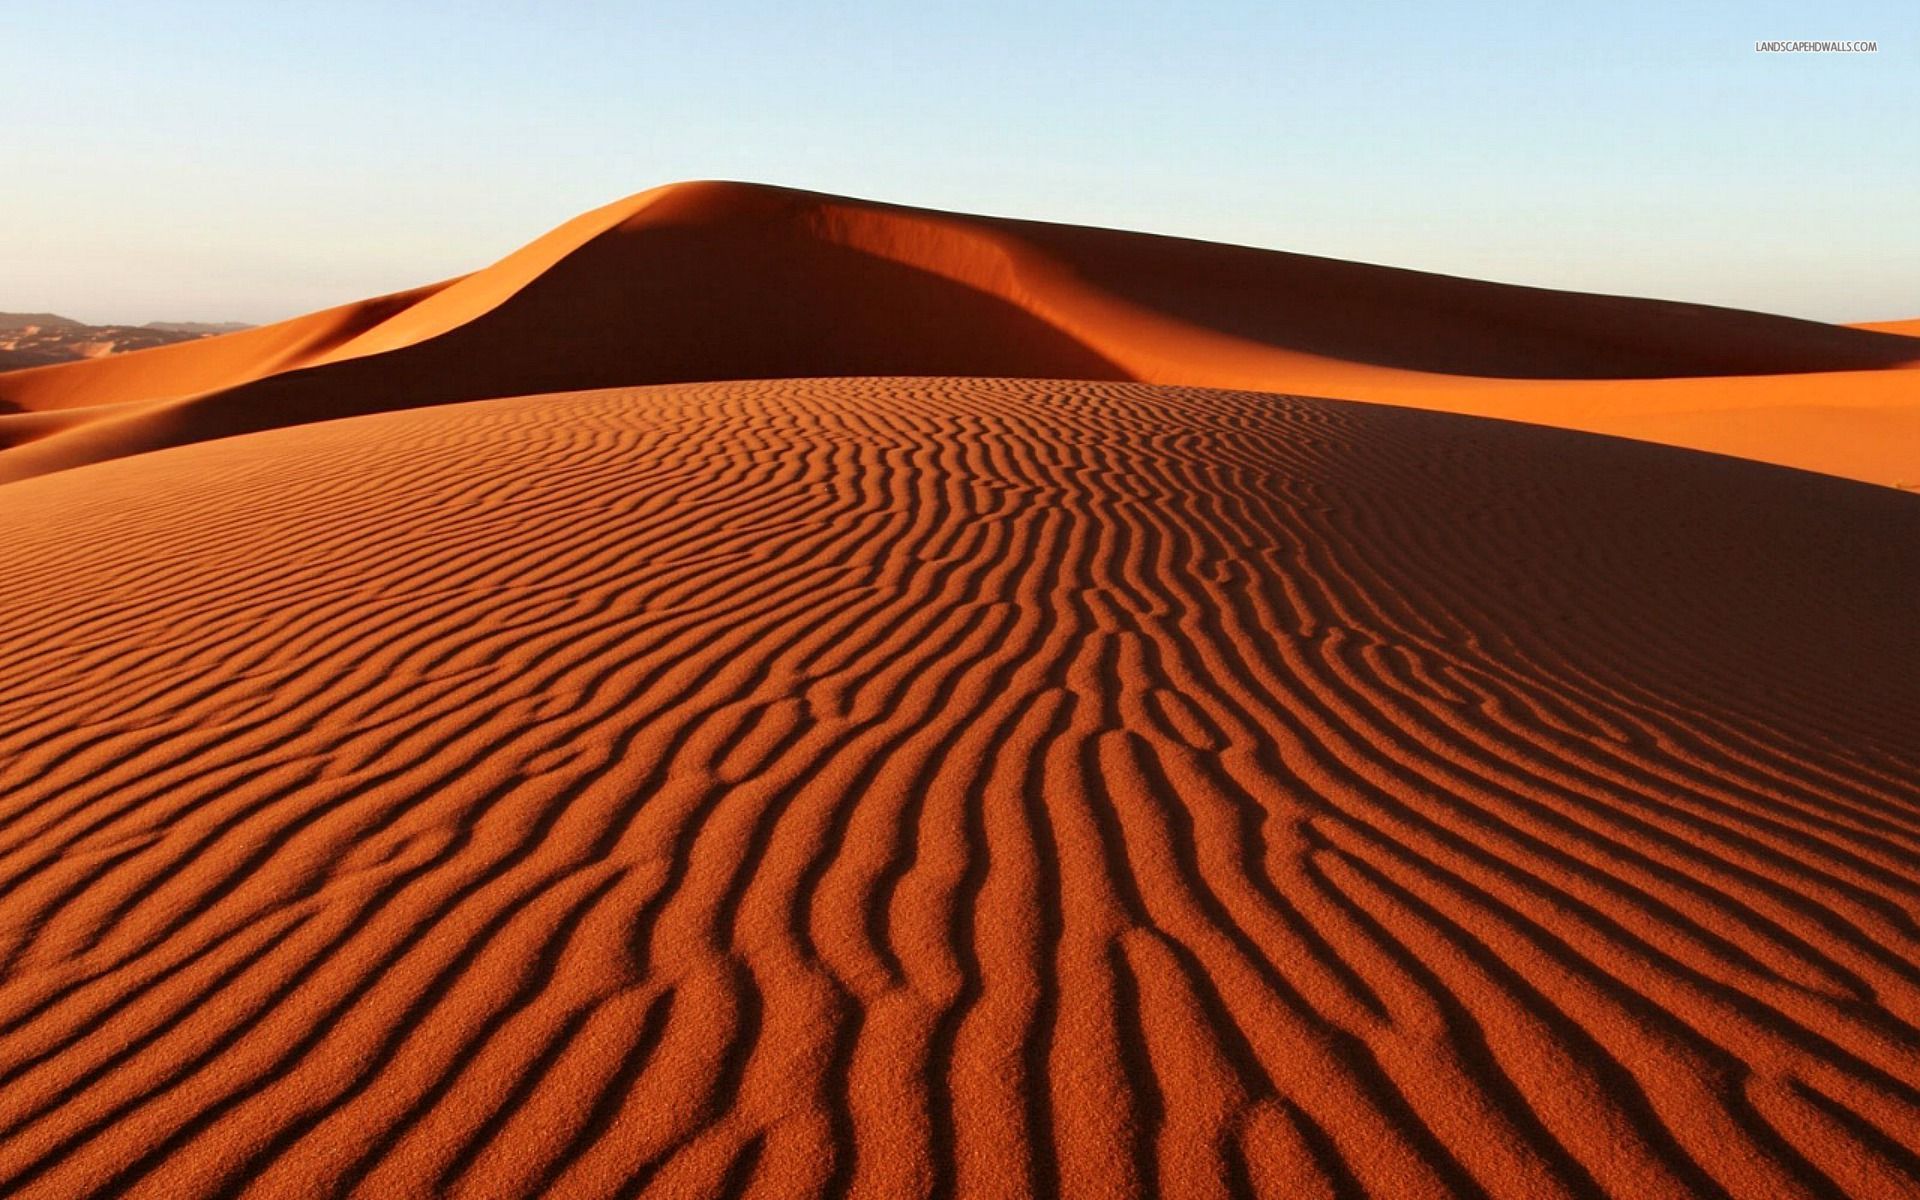 Desert Sand Dunes Wallpaper Image 2hm0h1e9t1 Araspot